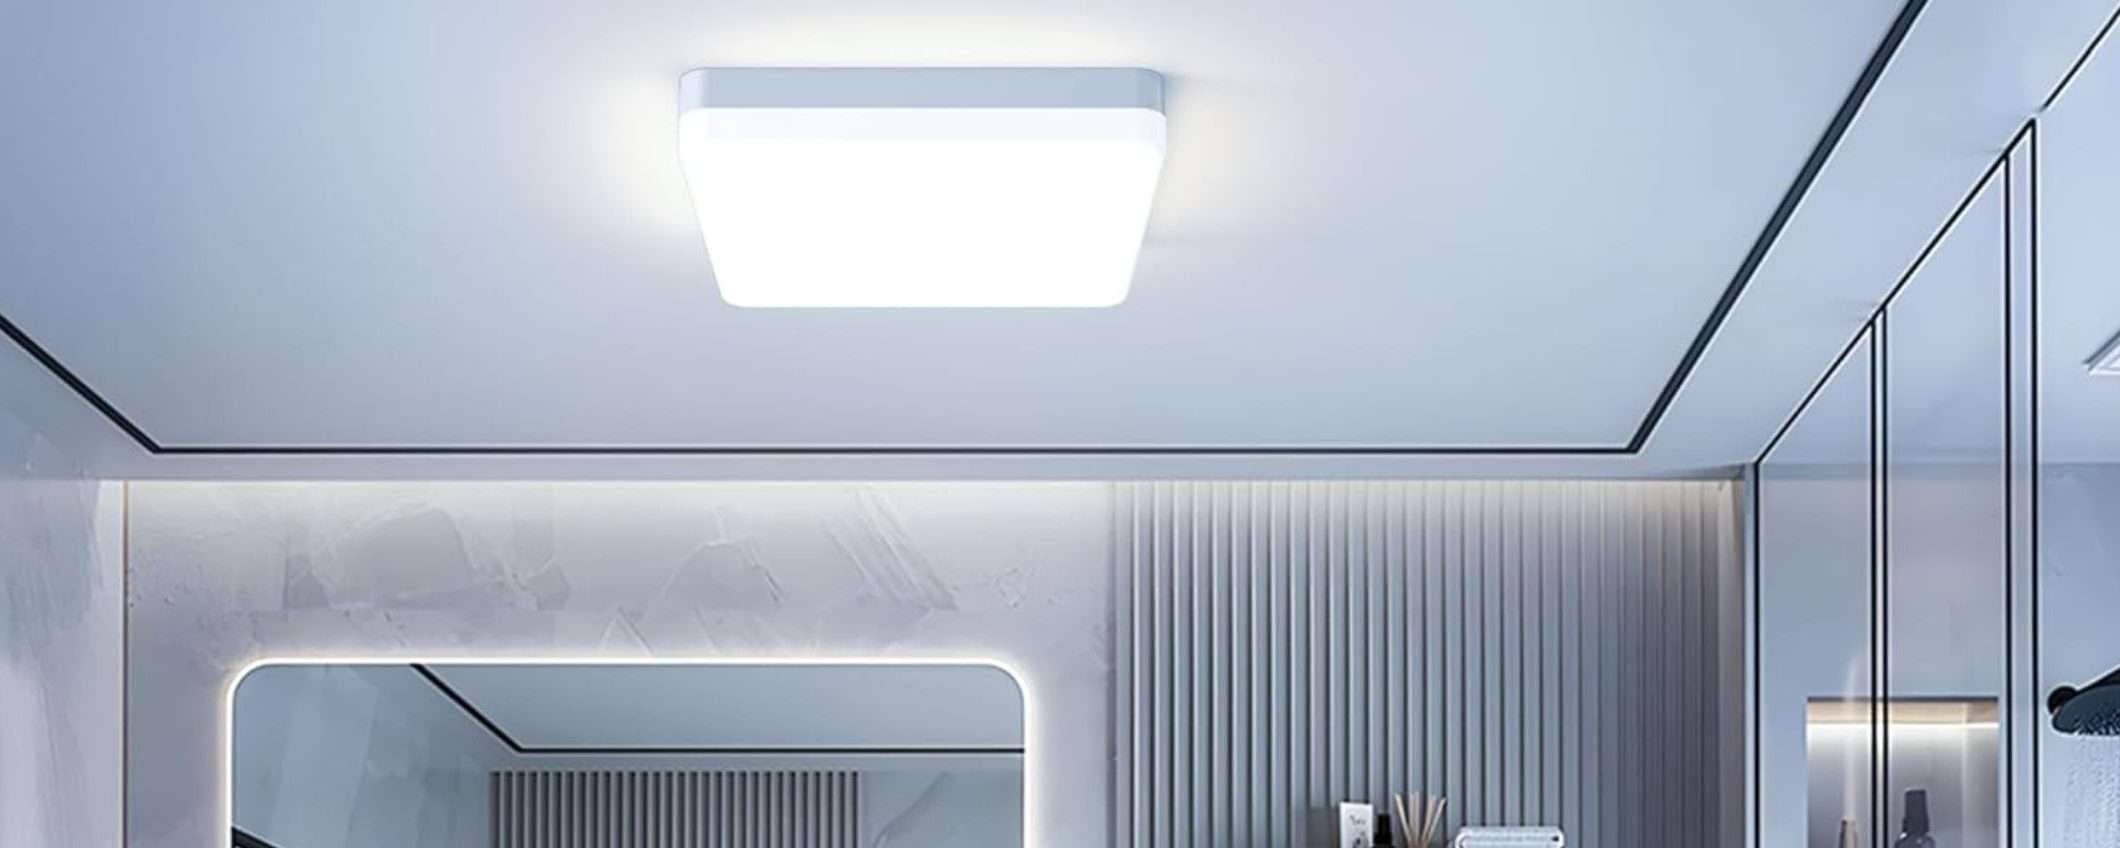 Plafoniera a LED da soffitto: LUMINOSISSIMA a soli 11,19€, SCONTO del 30%